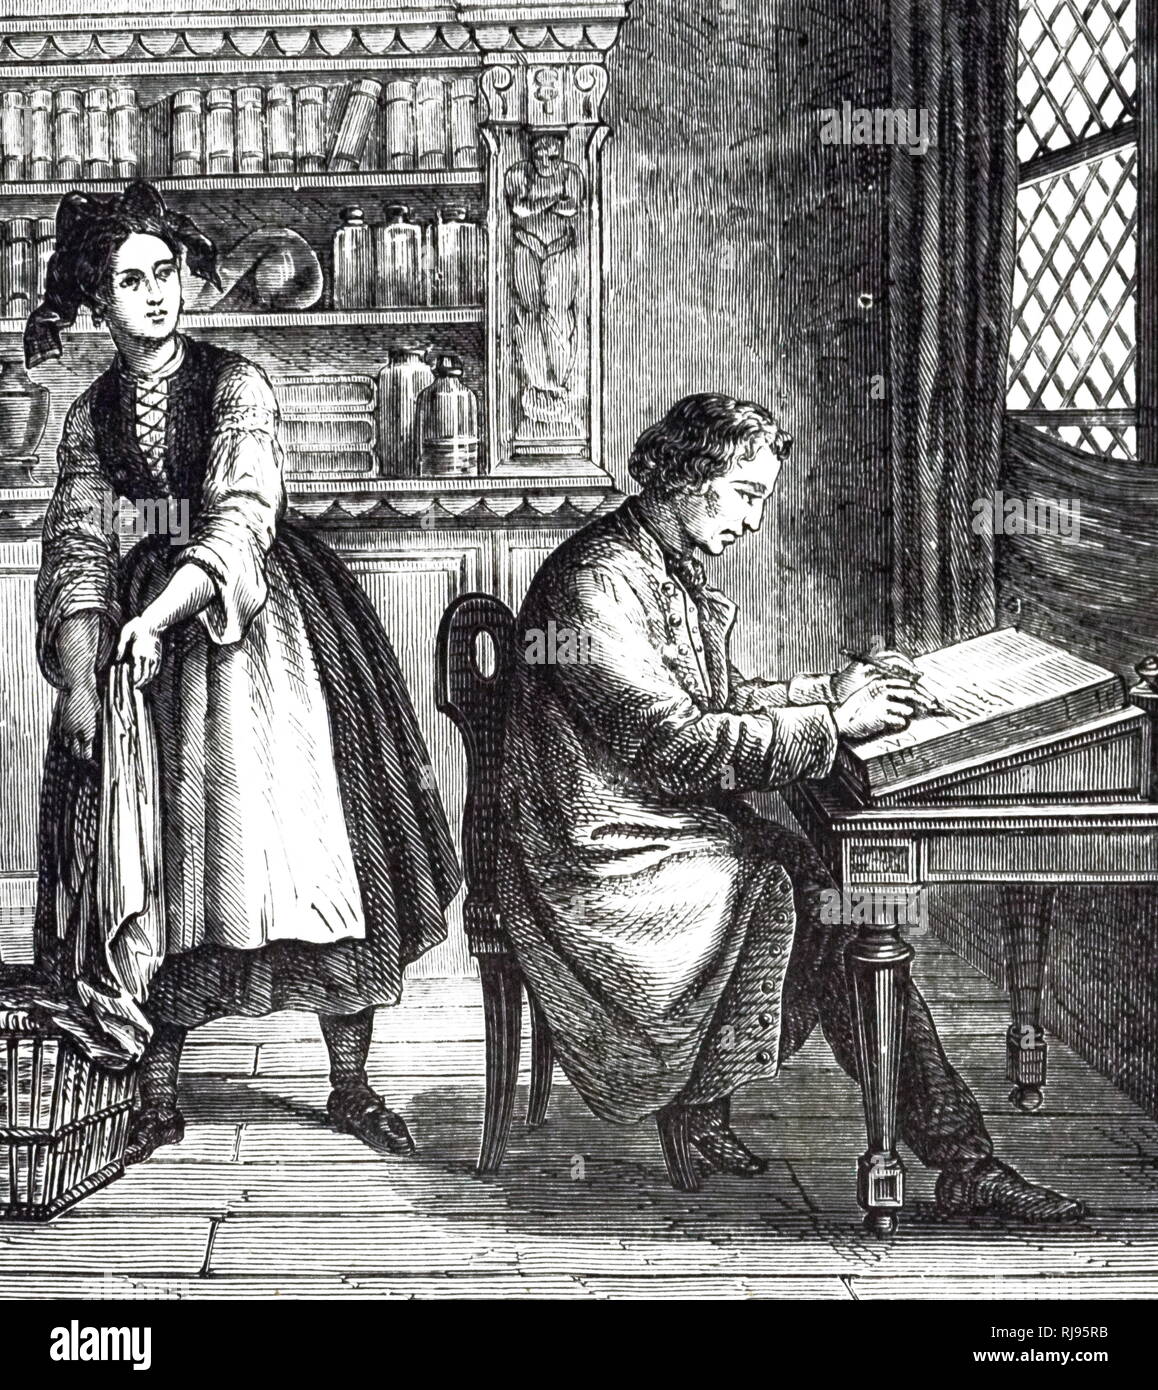 Eine Gravur, Alois Senefelder die Lithographie entdecken durch Zufall. Alois Senefelder (1771-1834) ein deutscher Schauspieler und Dramatiker, Lithographie in den 1790er Jahren erfunden. Vom 19. Jahrhundert Stockfoto